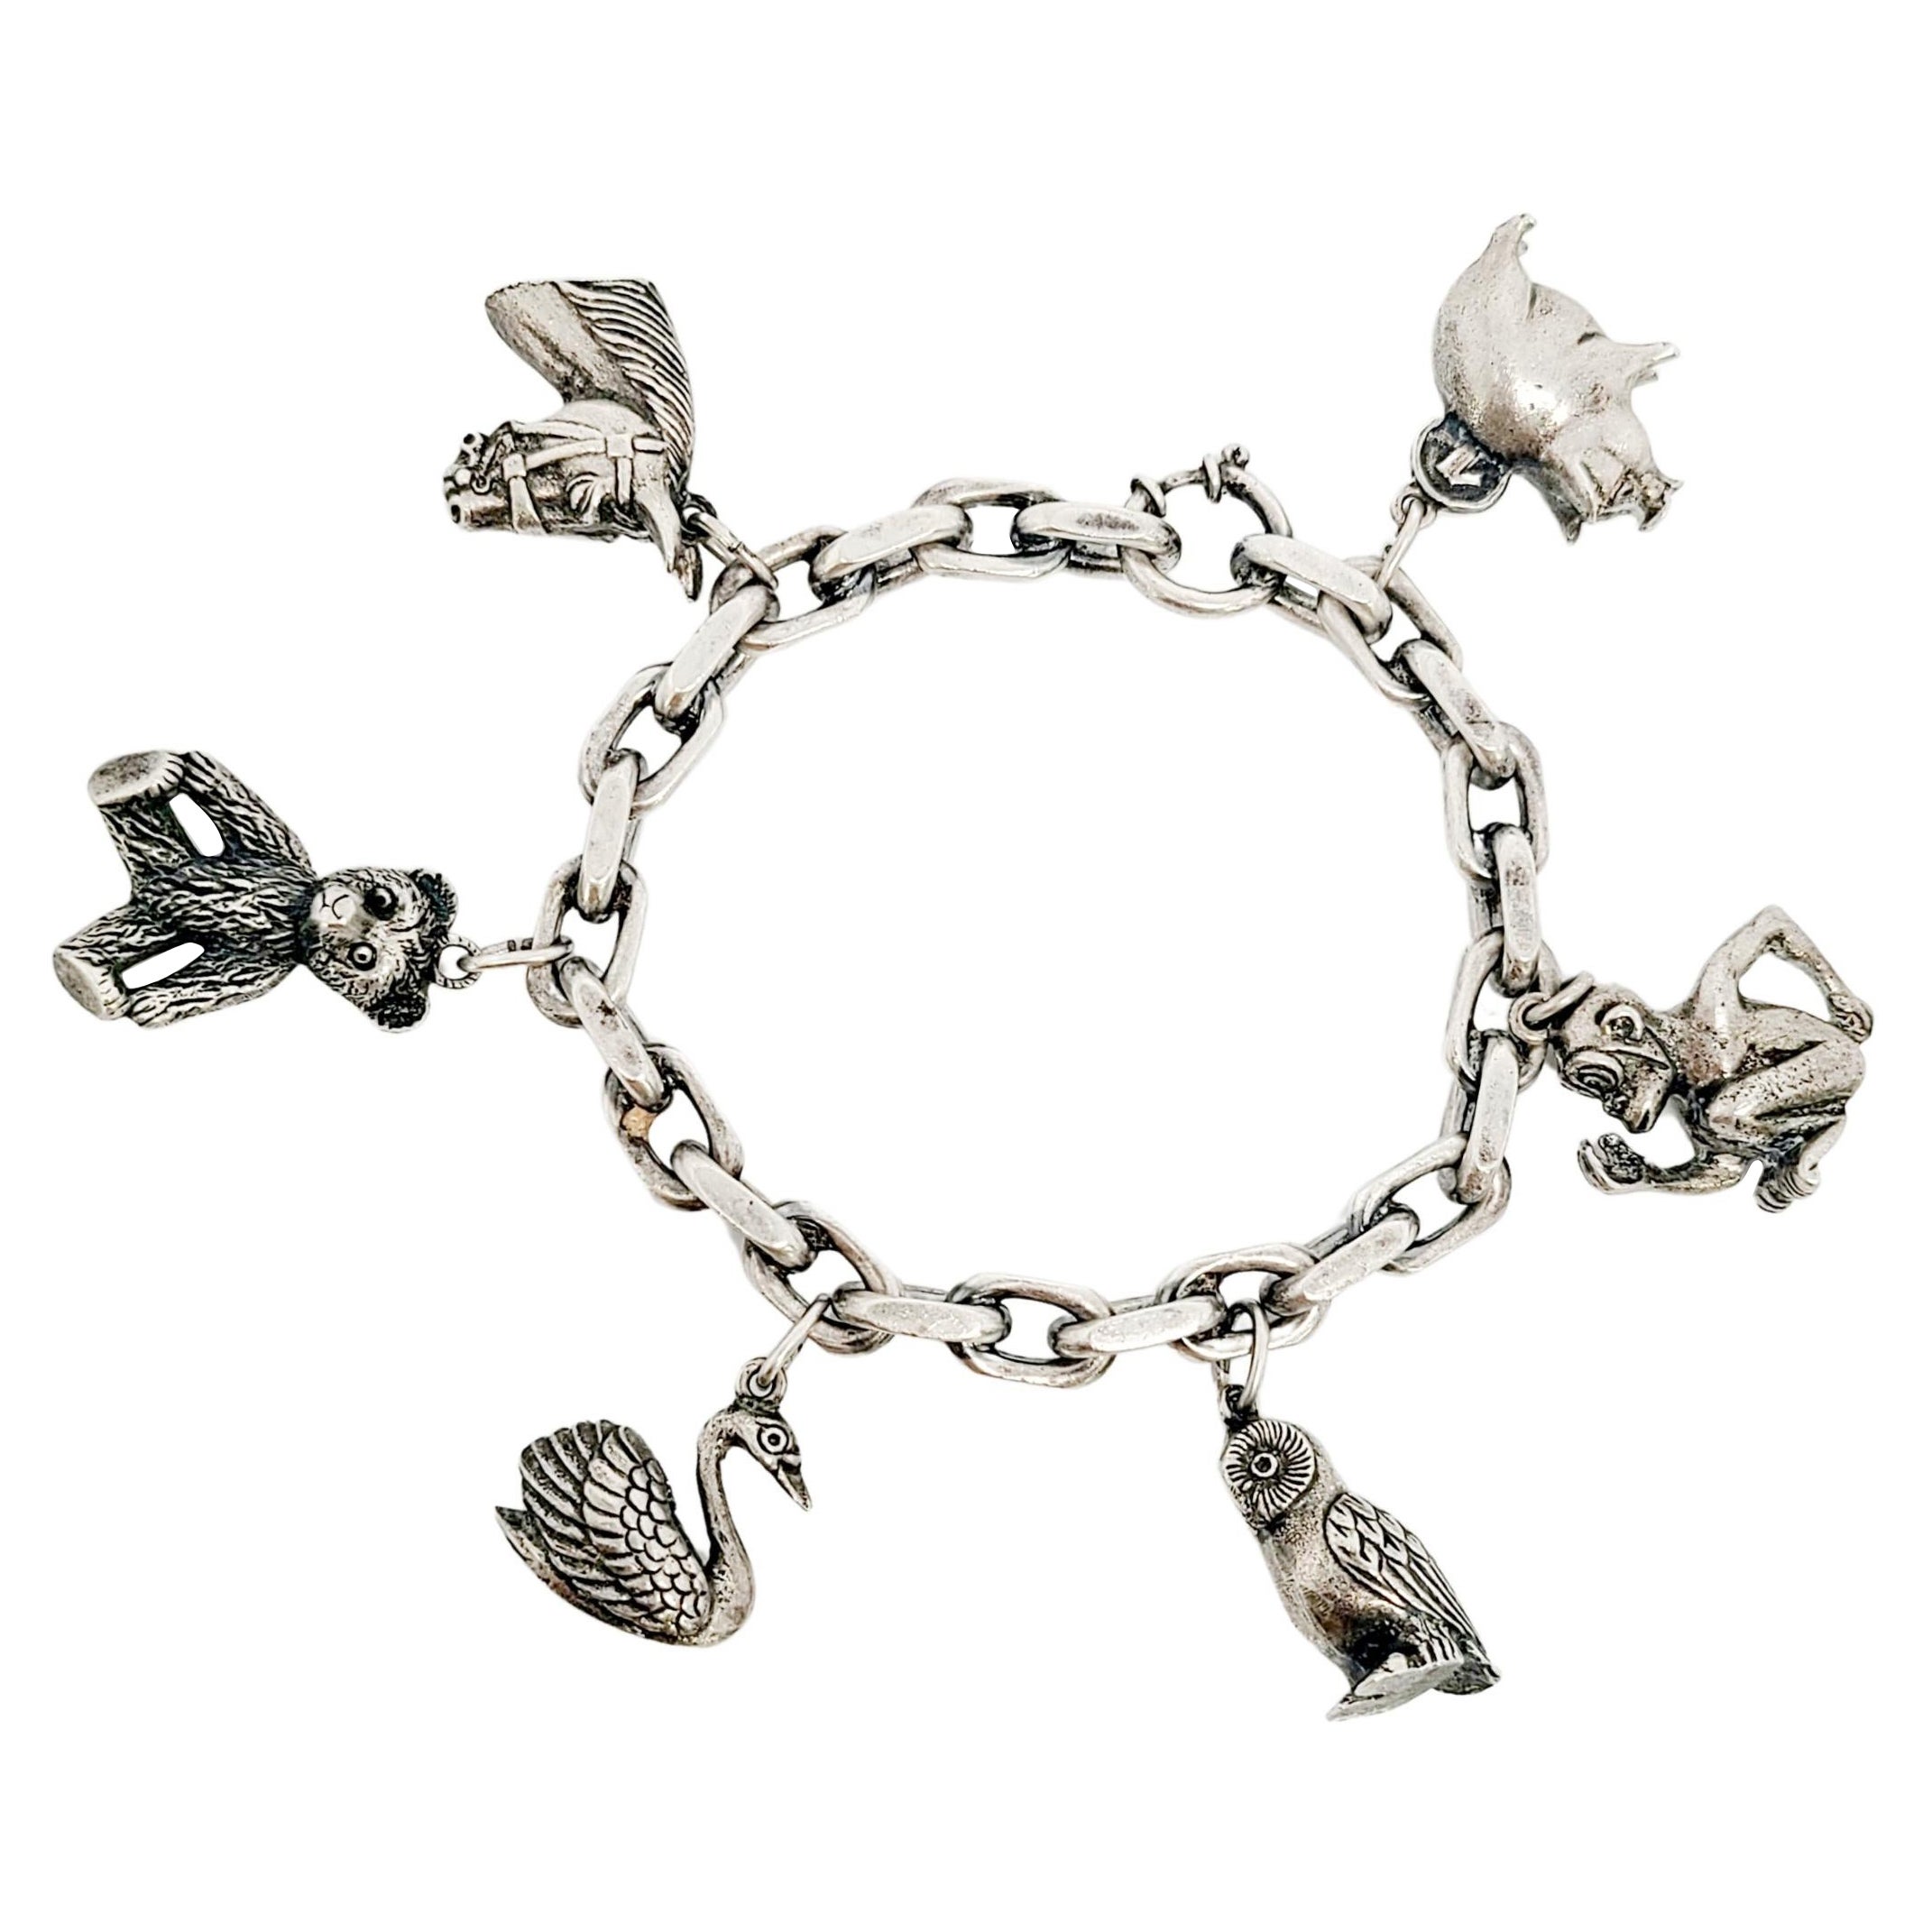 800er Silber-Tier-Charm-Armband #11021